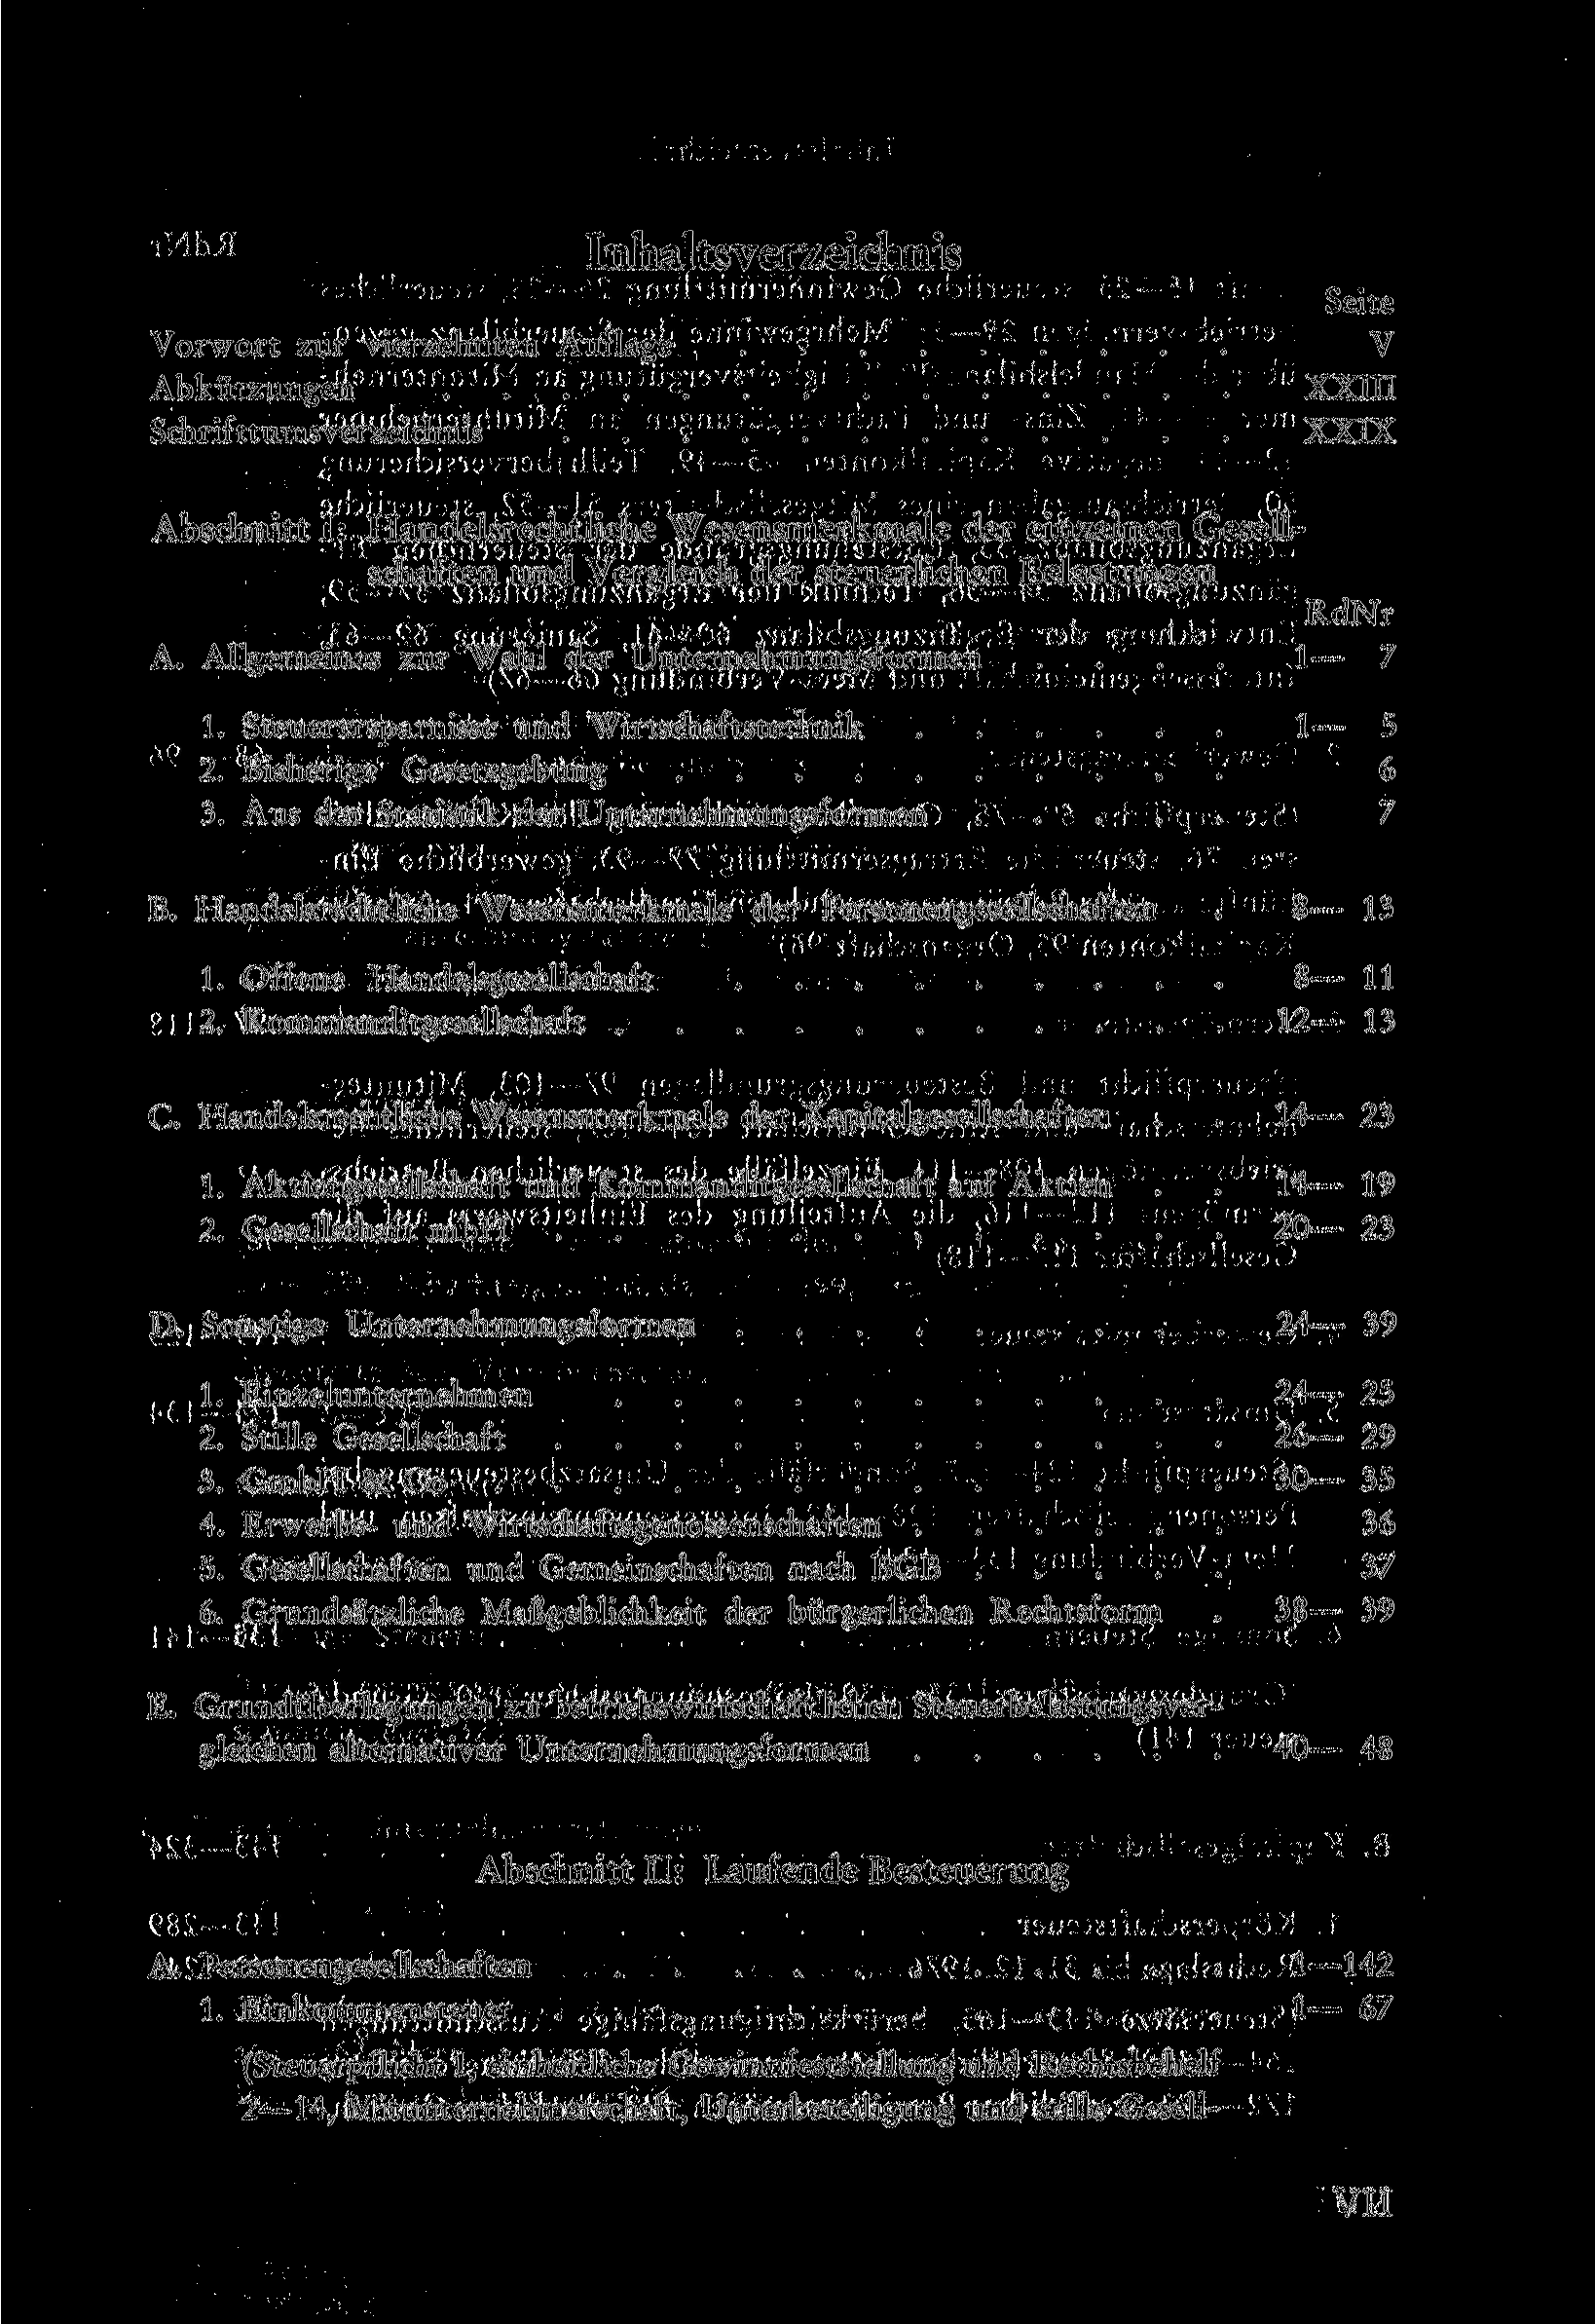 Vorwort zur vierzehnten Auflage Abkürzungen Schrifttumsverzeichnis Inhaltsverzeichnis Seite V ХХШ XXIX Abschnitt I: Handelsrechtliche Wesensmerkmale der einzelnen Gesellschaften und Vergleich der